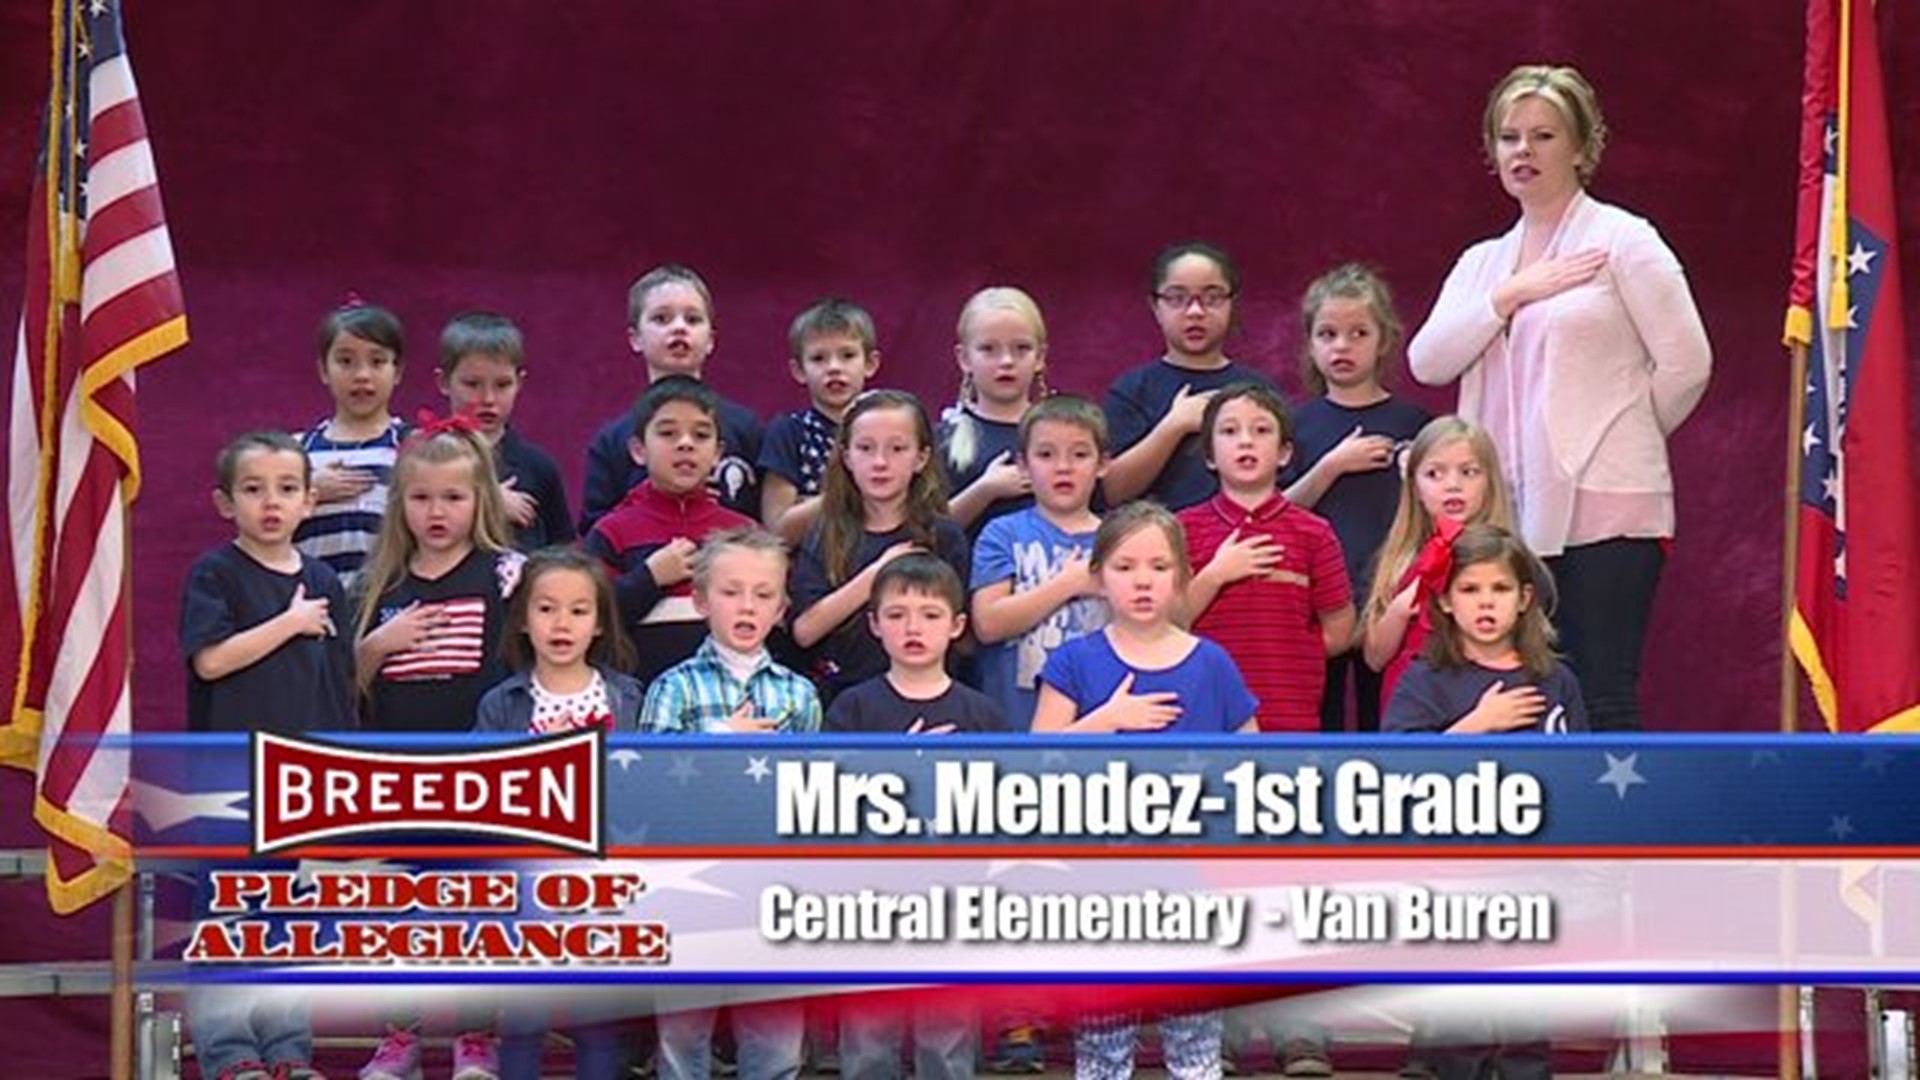 Central Elementary, Van Buren - Mrs. Mendez - 1st Grade